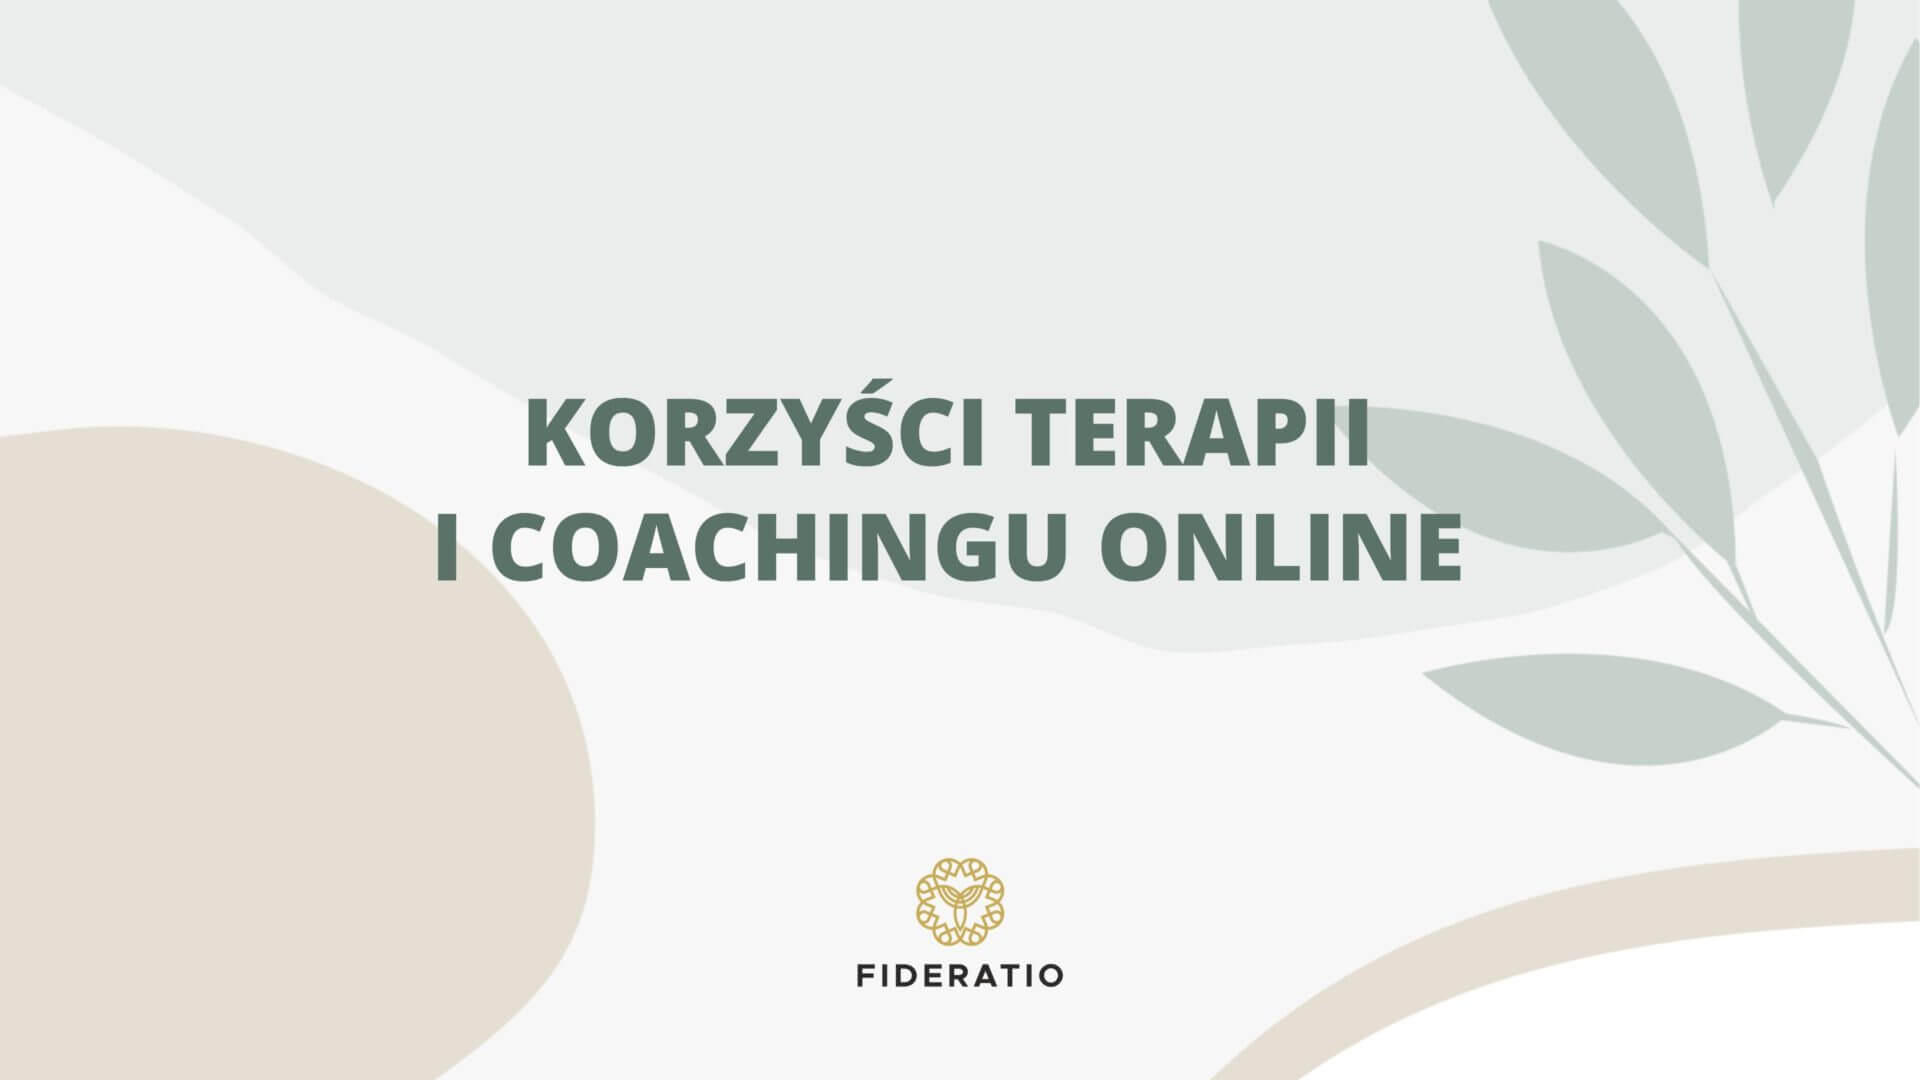 Korzyści terapii i coachingu online